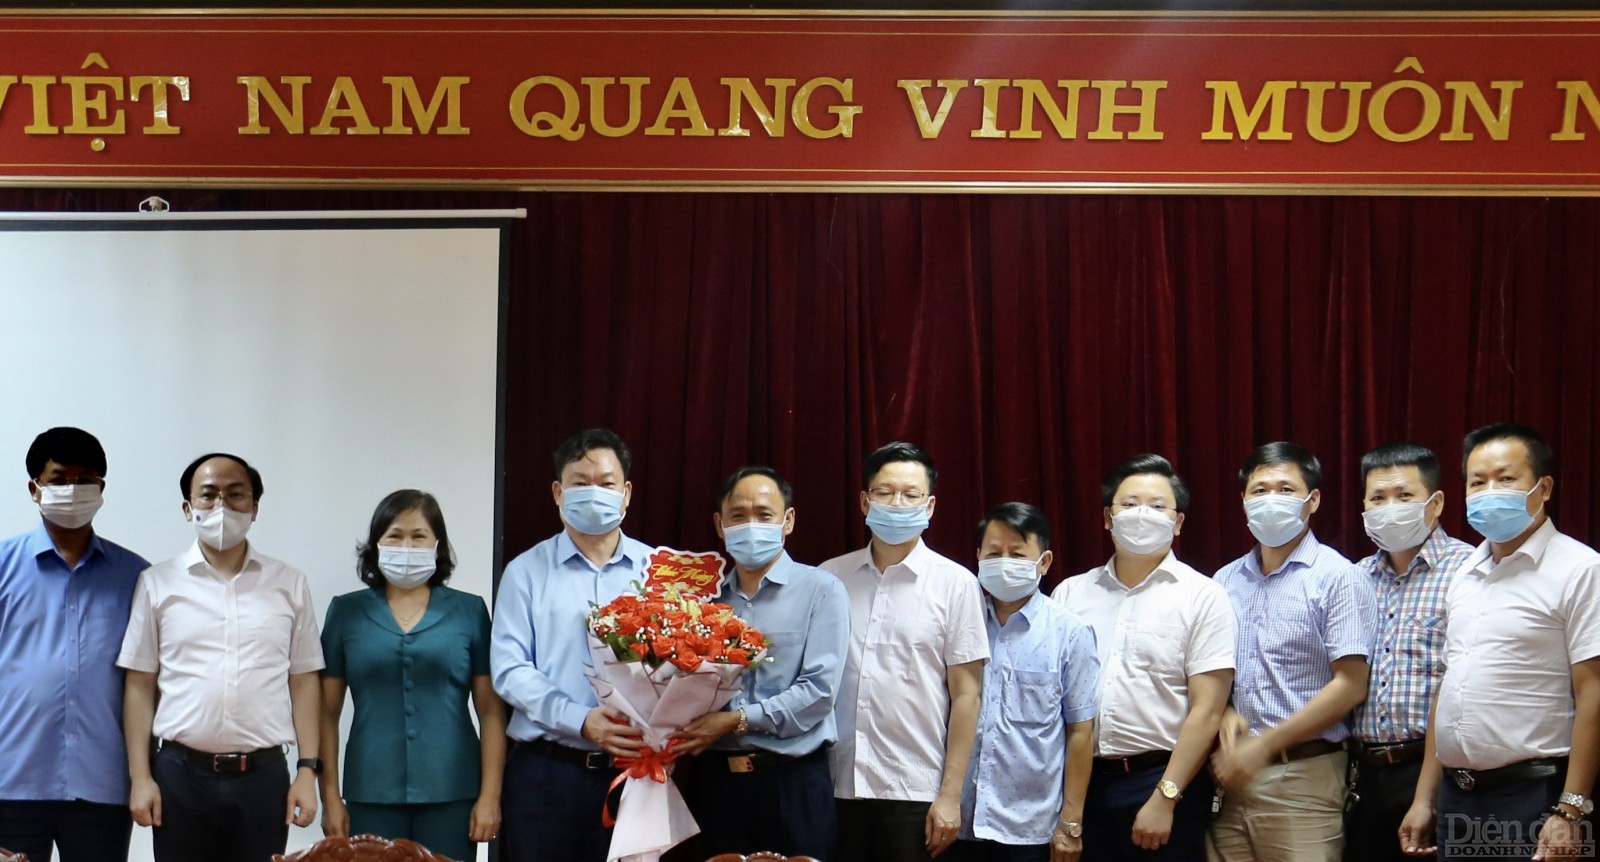 Bí thư Tỉnh ủy ông Hoàng Duy Chinh tặng hoa chúc mừng đại diện các doanh nghiệp, doanh nhân nhân dịp kỷ niệm ngày Doanh nhân Việt Nam 13/10